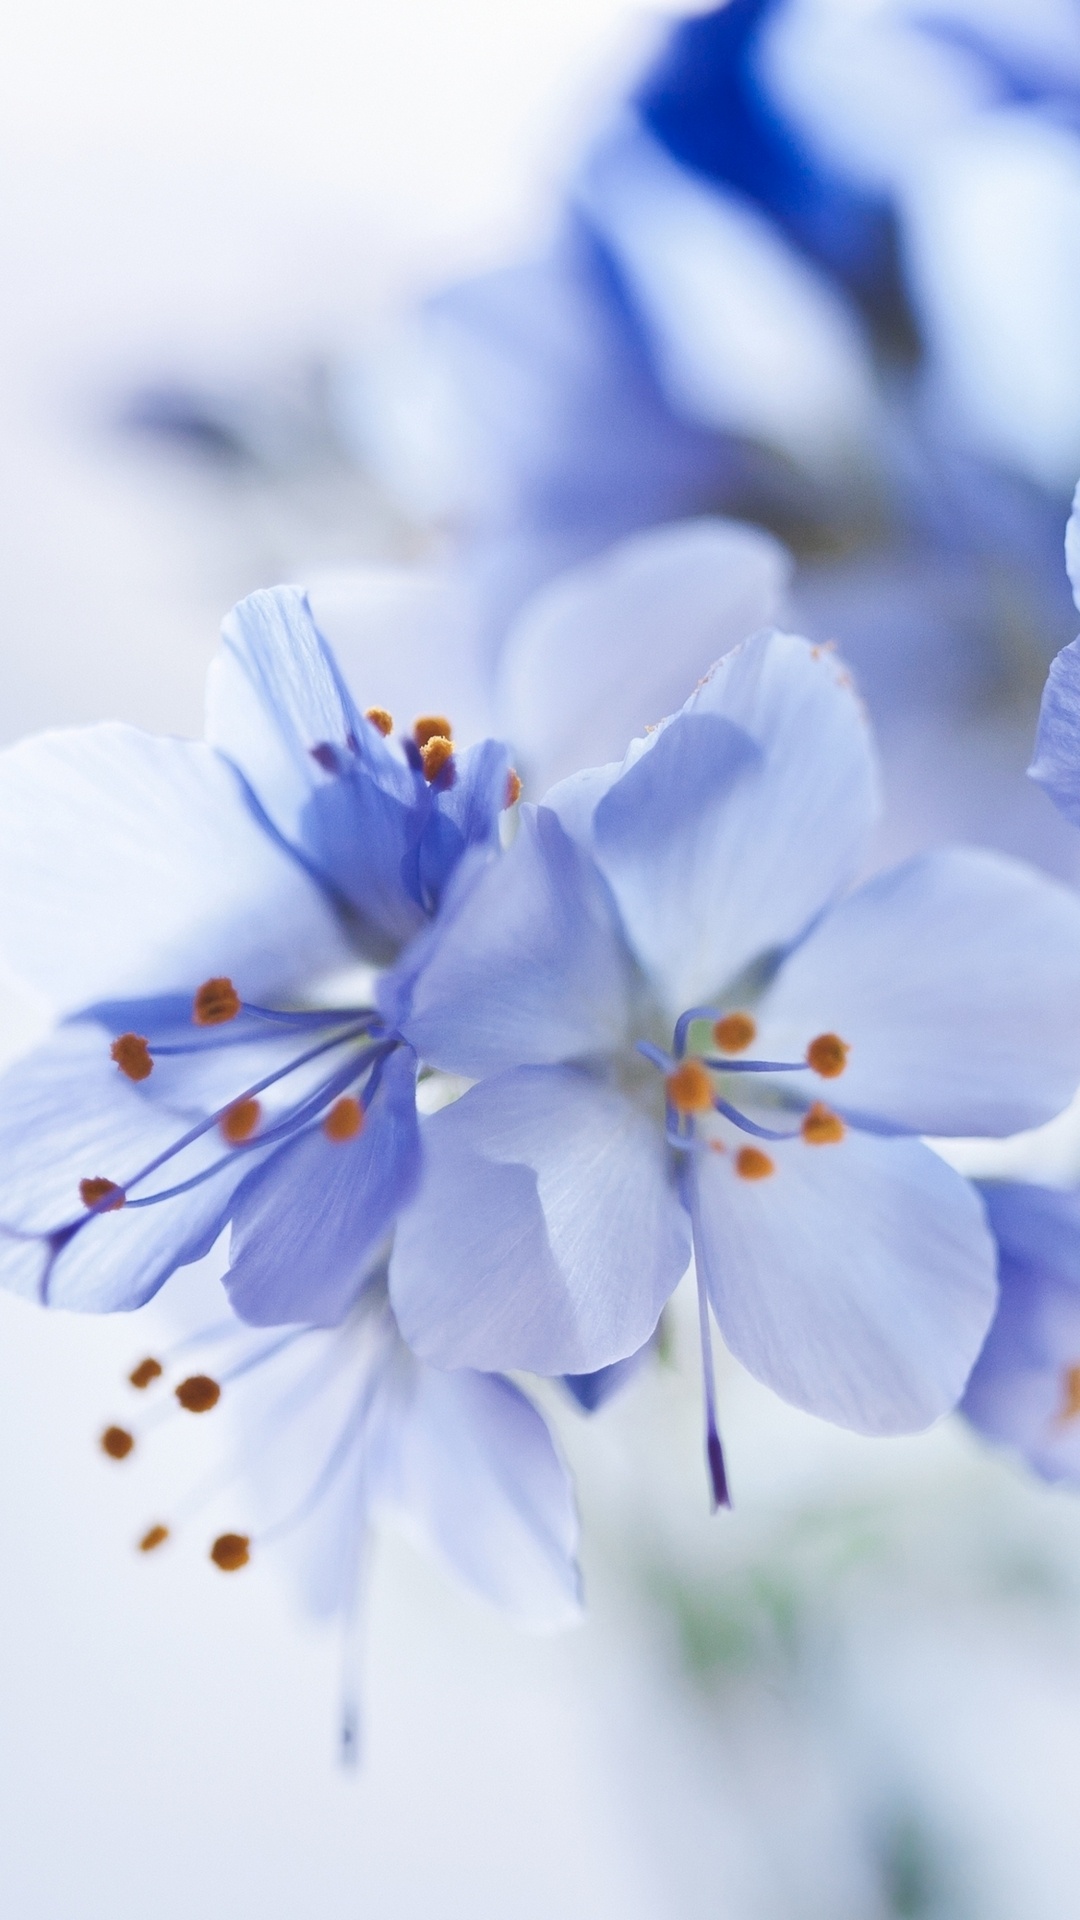 Fleurs Blanches et Bleues Dans L'objectif à Basculement. Wallpaper in 1080x1920 Resolution